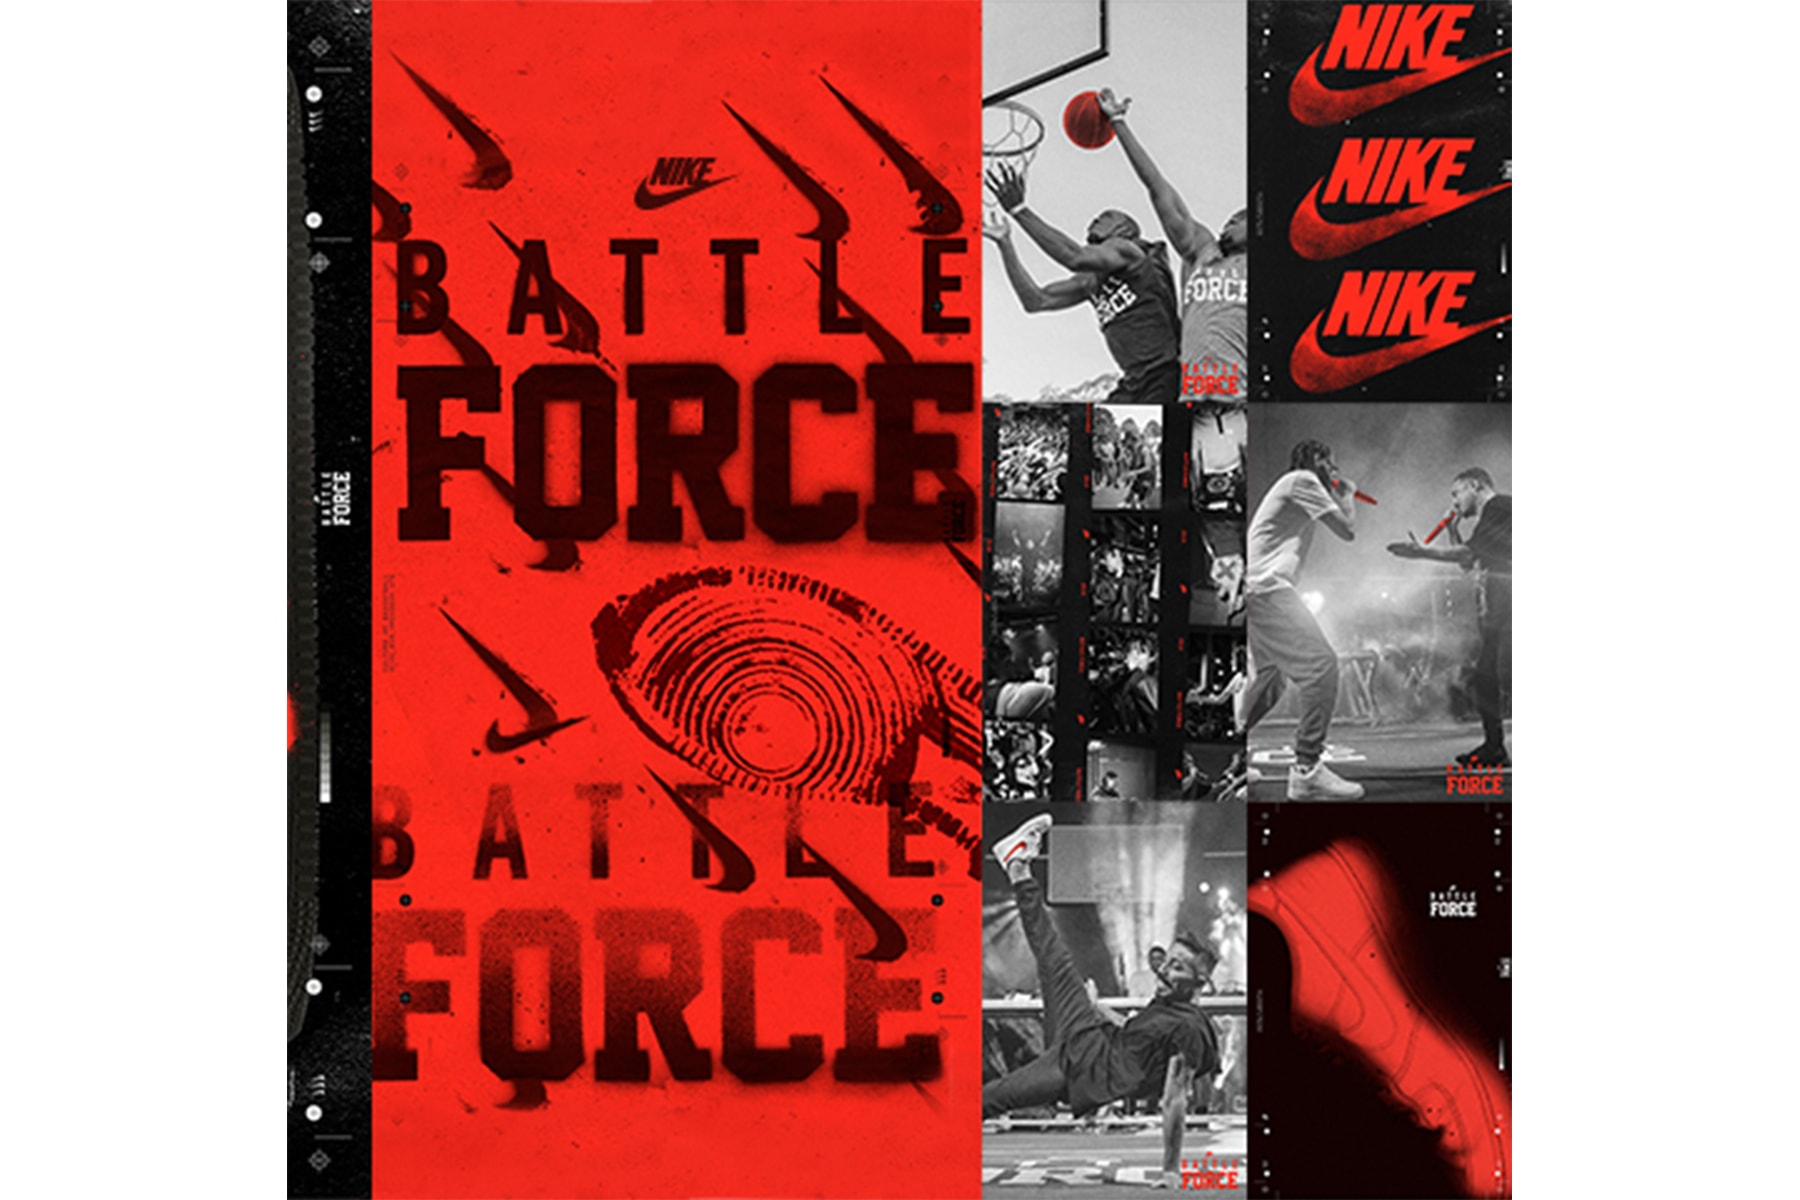 Nike ナイキ BATTLE FORCE バトル フォース